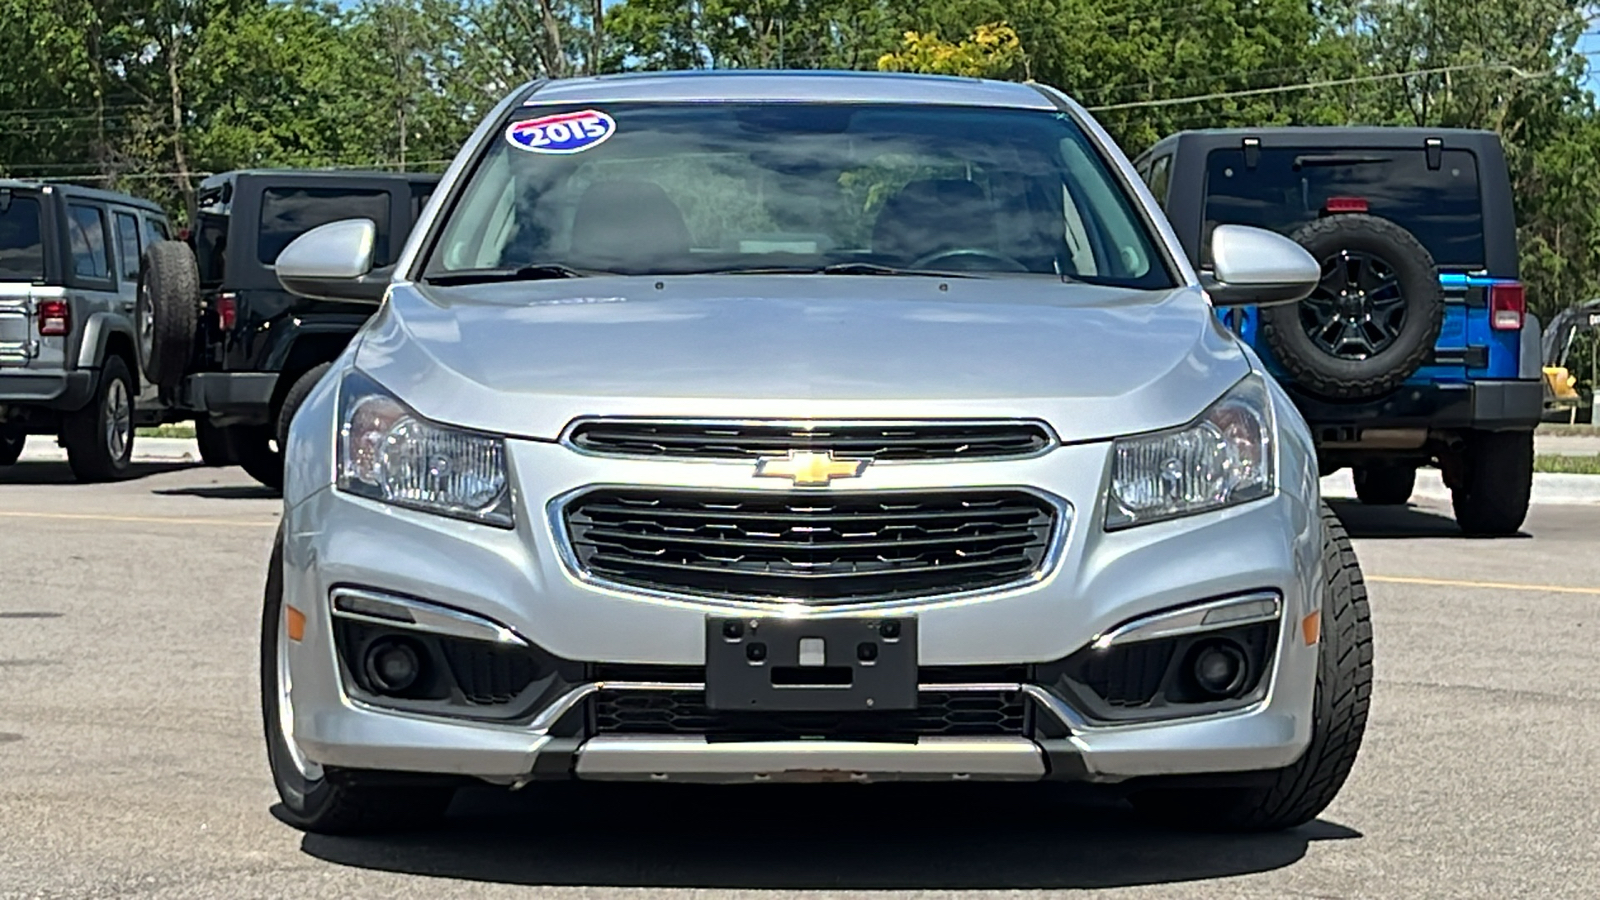 2015 Chevrolet Cruze 1LT Auto 3